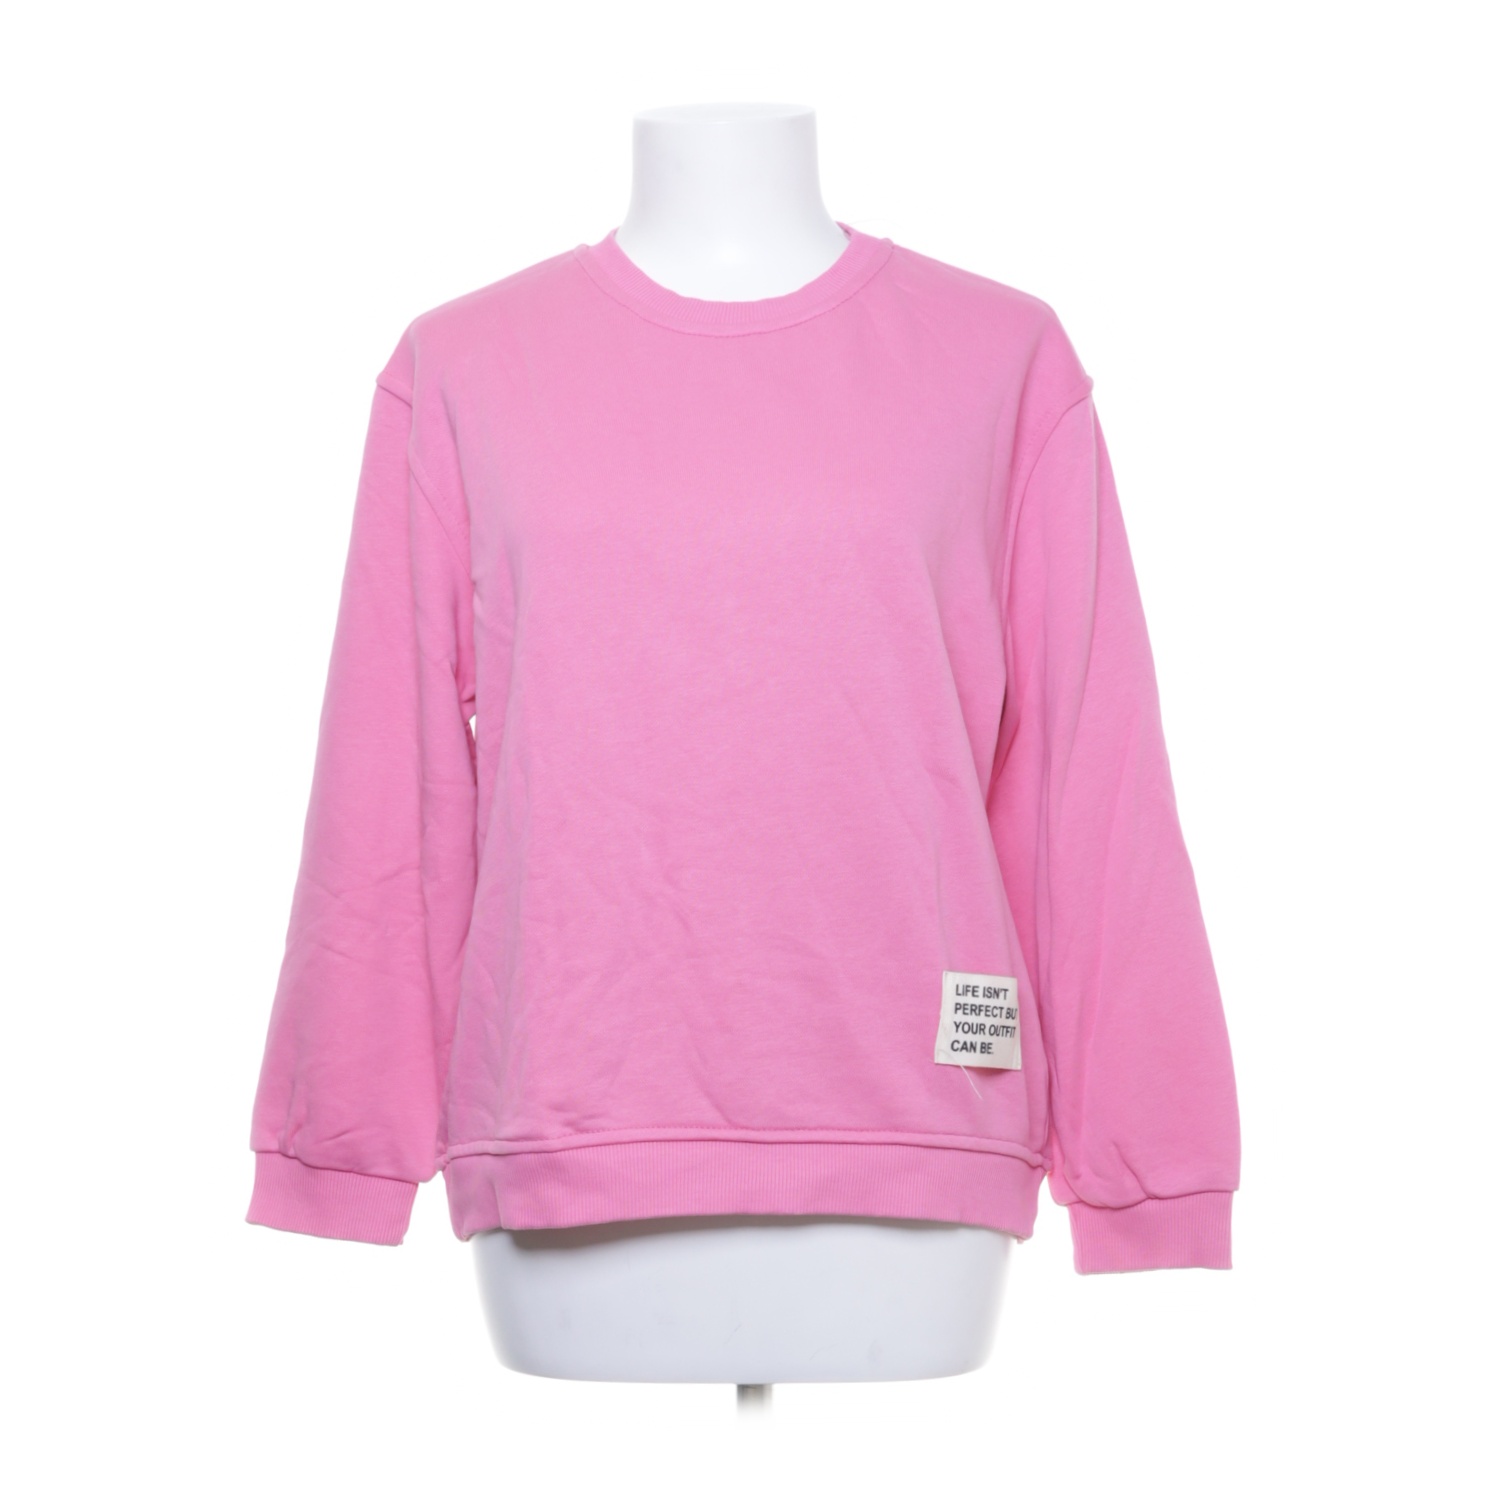 Miss goodlife - Sweatshirt - Größe: M - Pink von miss goodlife